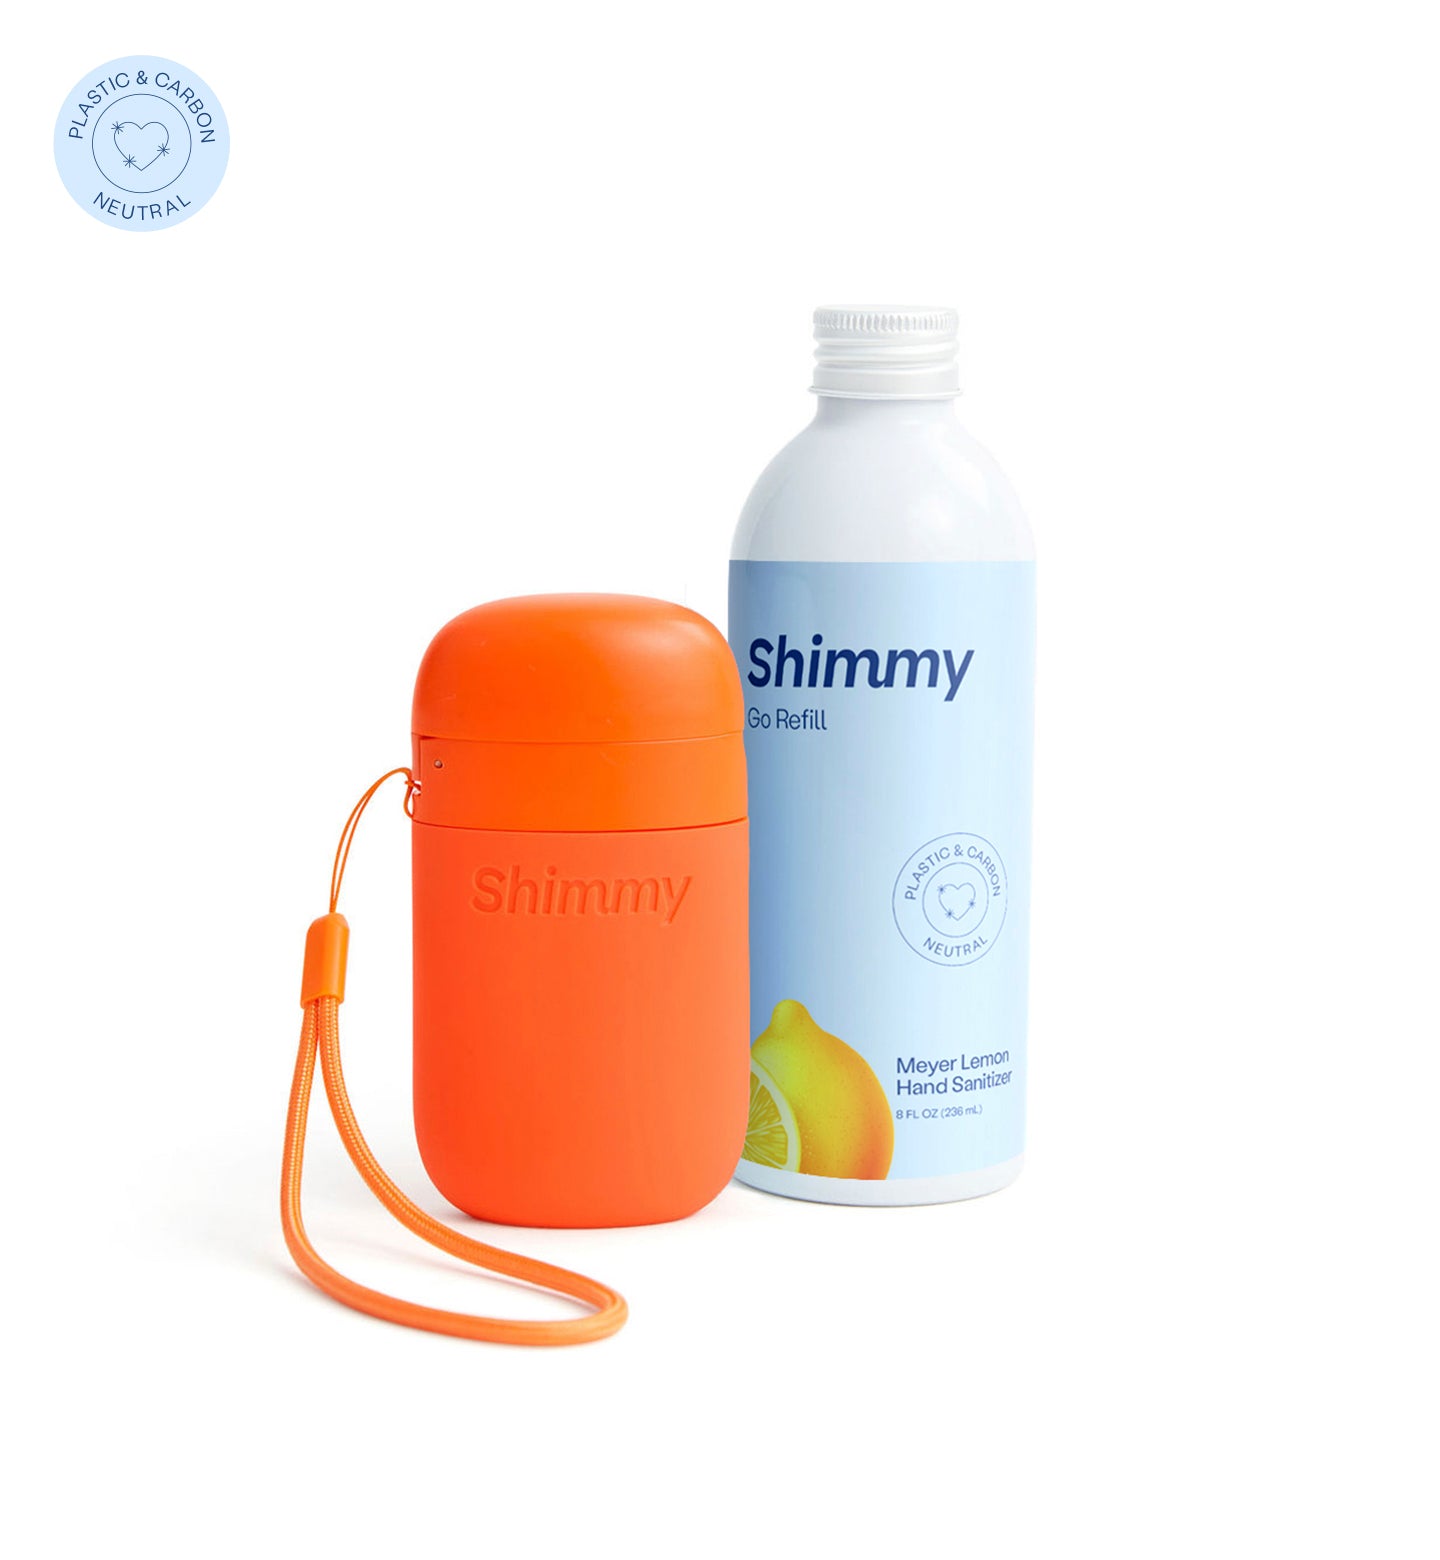 Shimmy Go Portable Hand Sanitizer Dispenser Sunset Red + Meyer Lemon Hand Sanitizer [40734763450559] - 